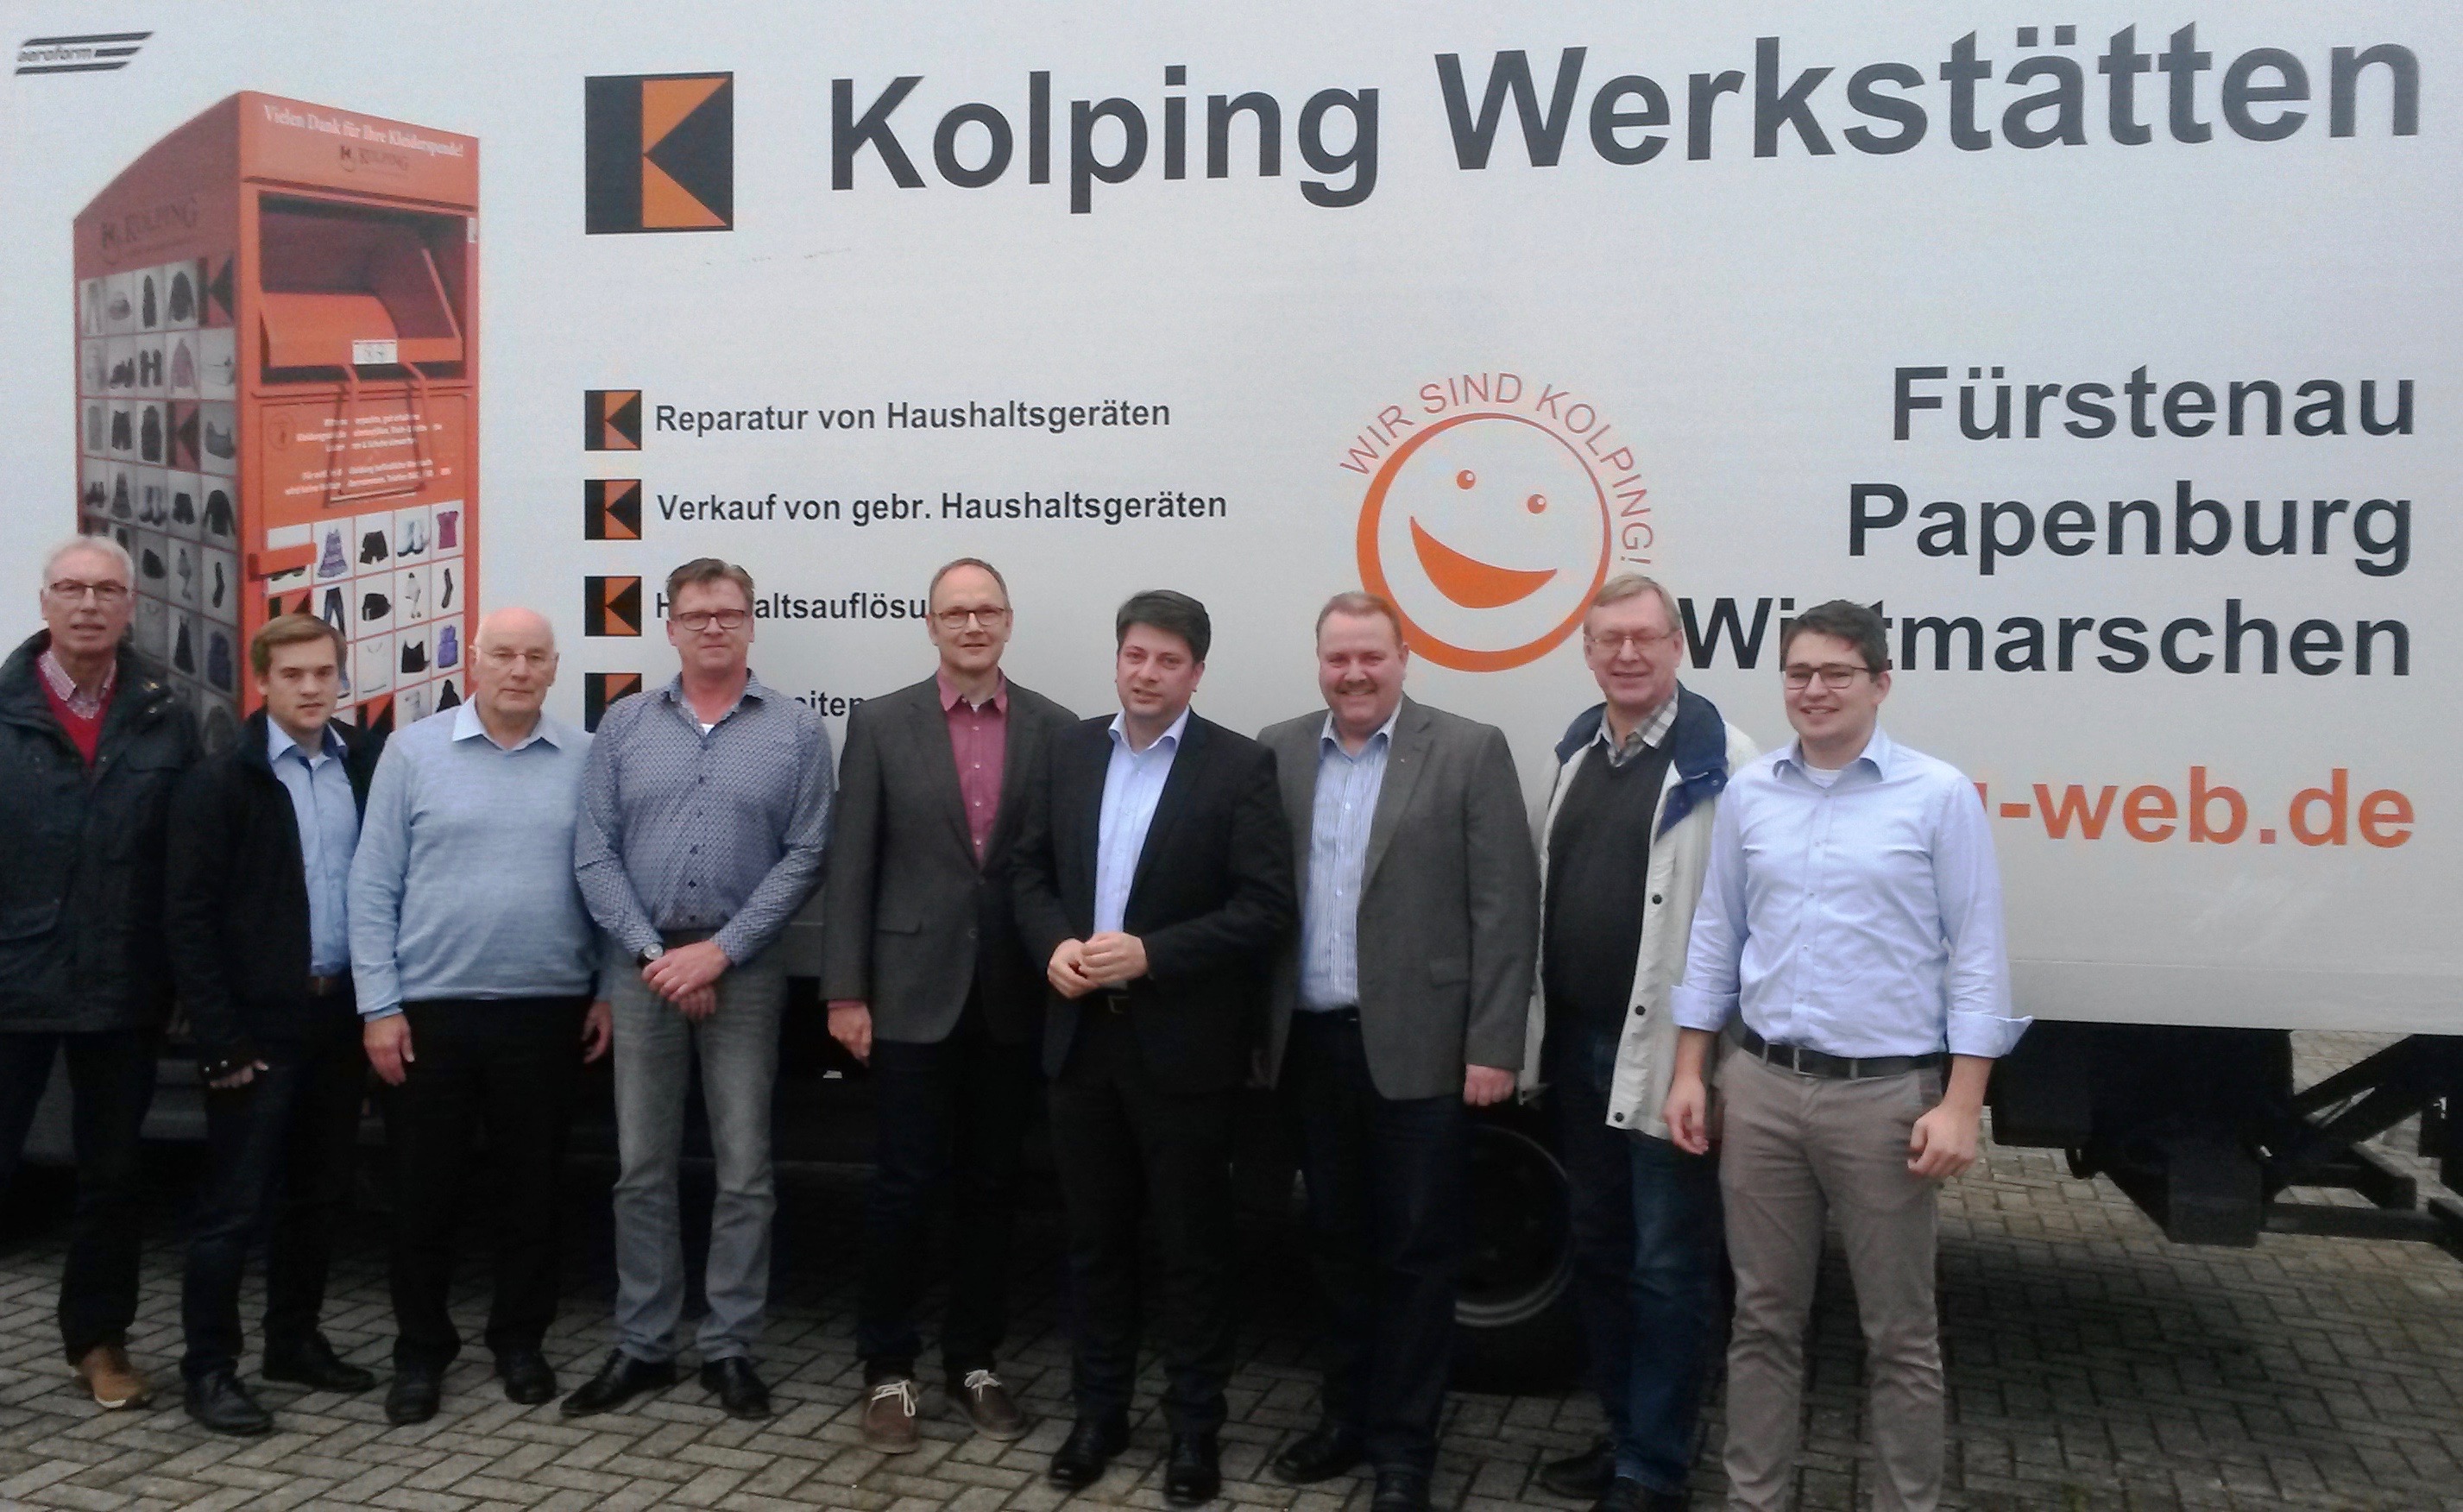 Besuch bei der Kolping-Werkstatt in Fürstenau.